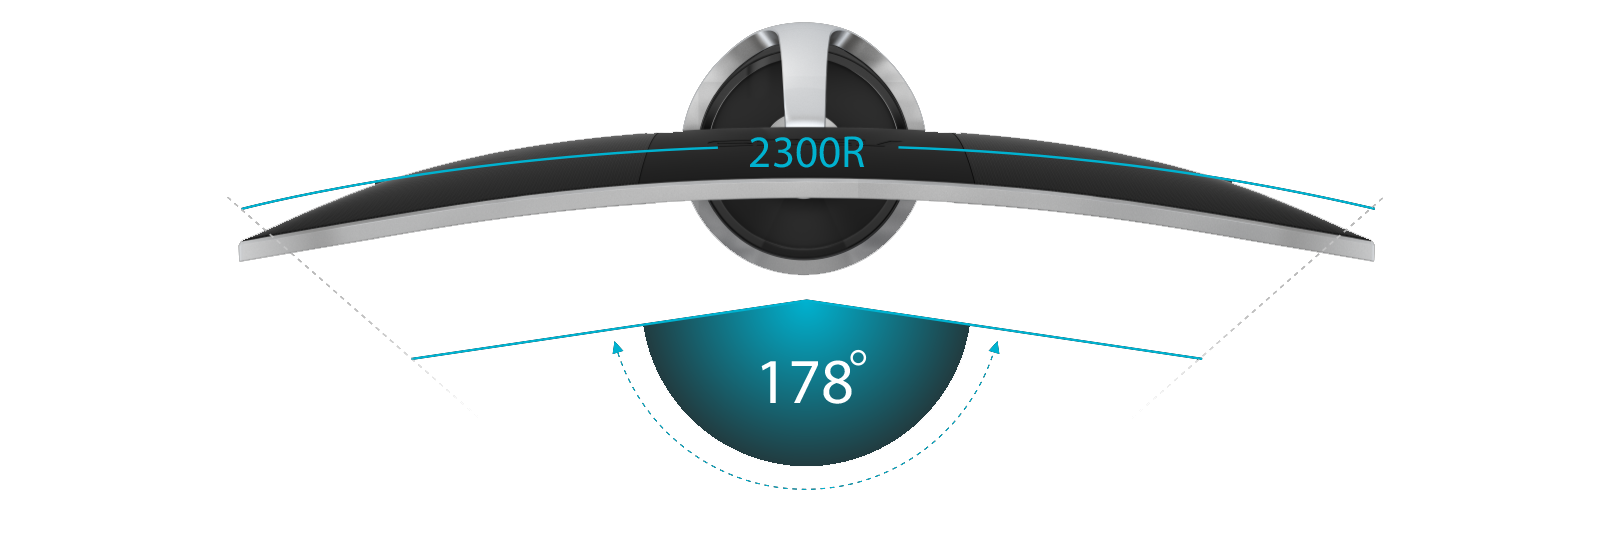 Der ASUS Designo Curve MX38VC besitzt ein Seitenverhältnis von 21:9 und einen Curved-Bildschirm mit 2300R-Krümmung für ein breiteres Sichtfeld. Er verfügt über einen weiten 178-Grad-Blickwinkel, damit auch bei extremen Betrachtungswinkeln keine Farbverschiebungen auftreten.